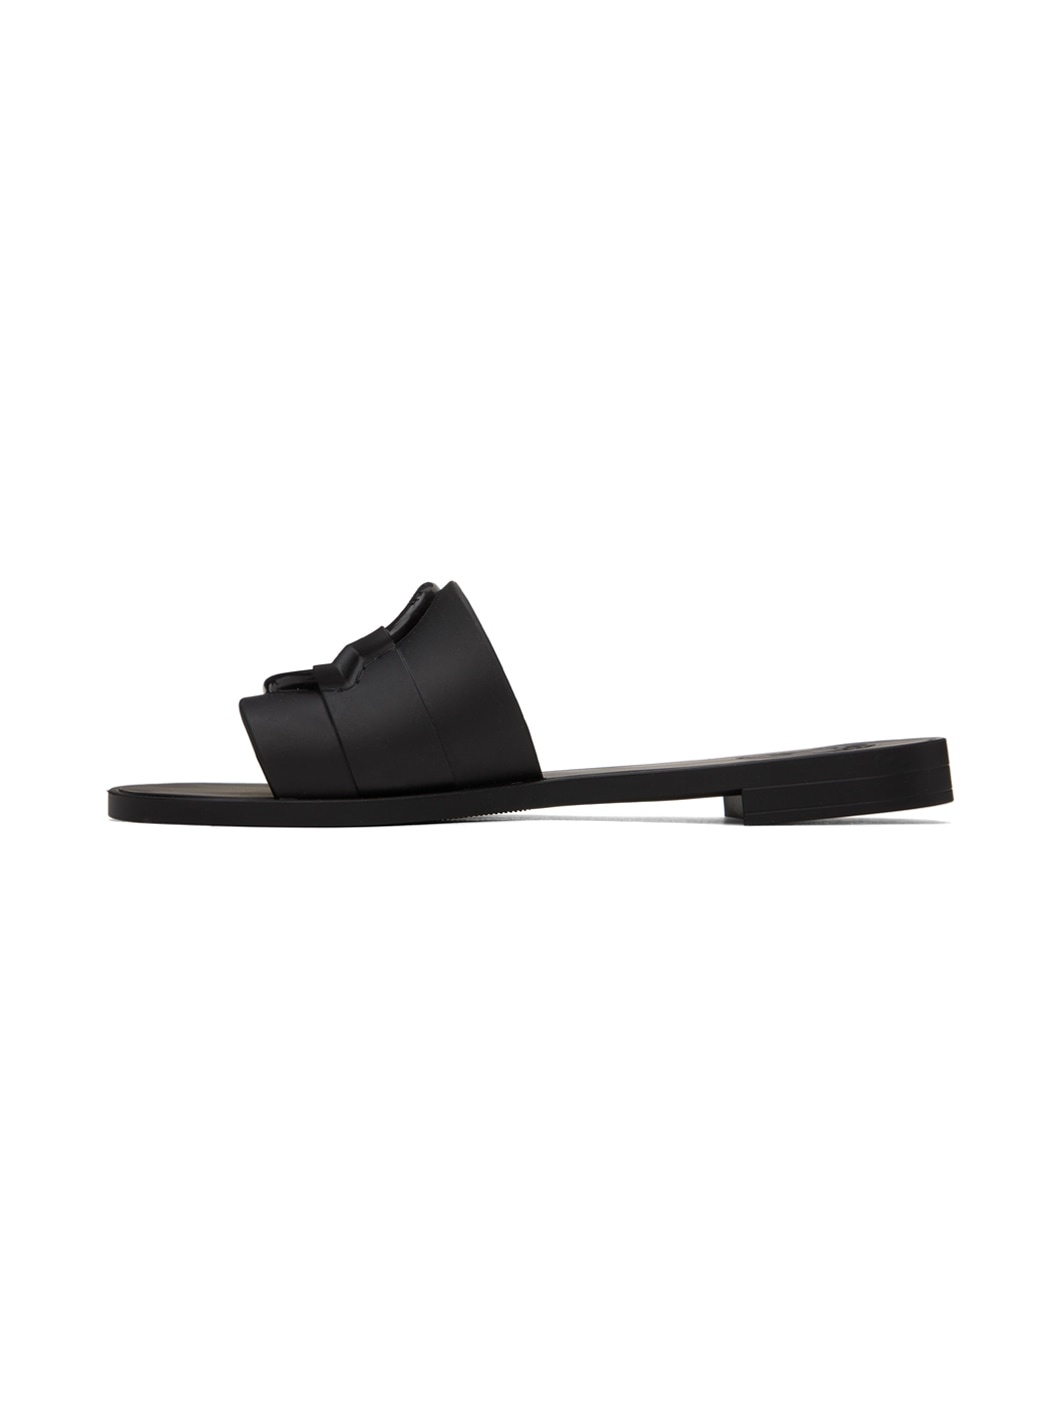 Black Rubber Sandals - 3